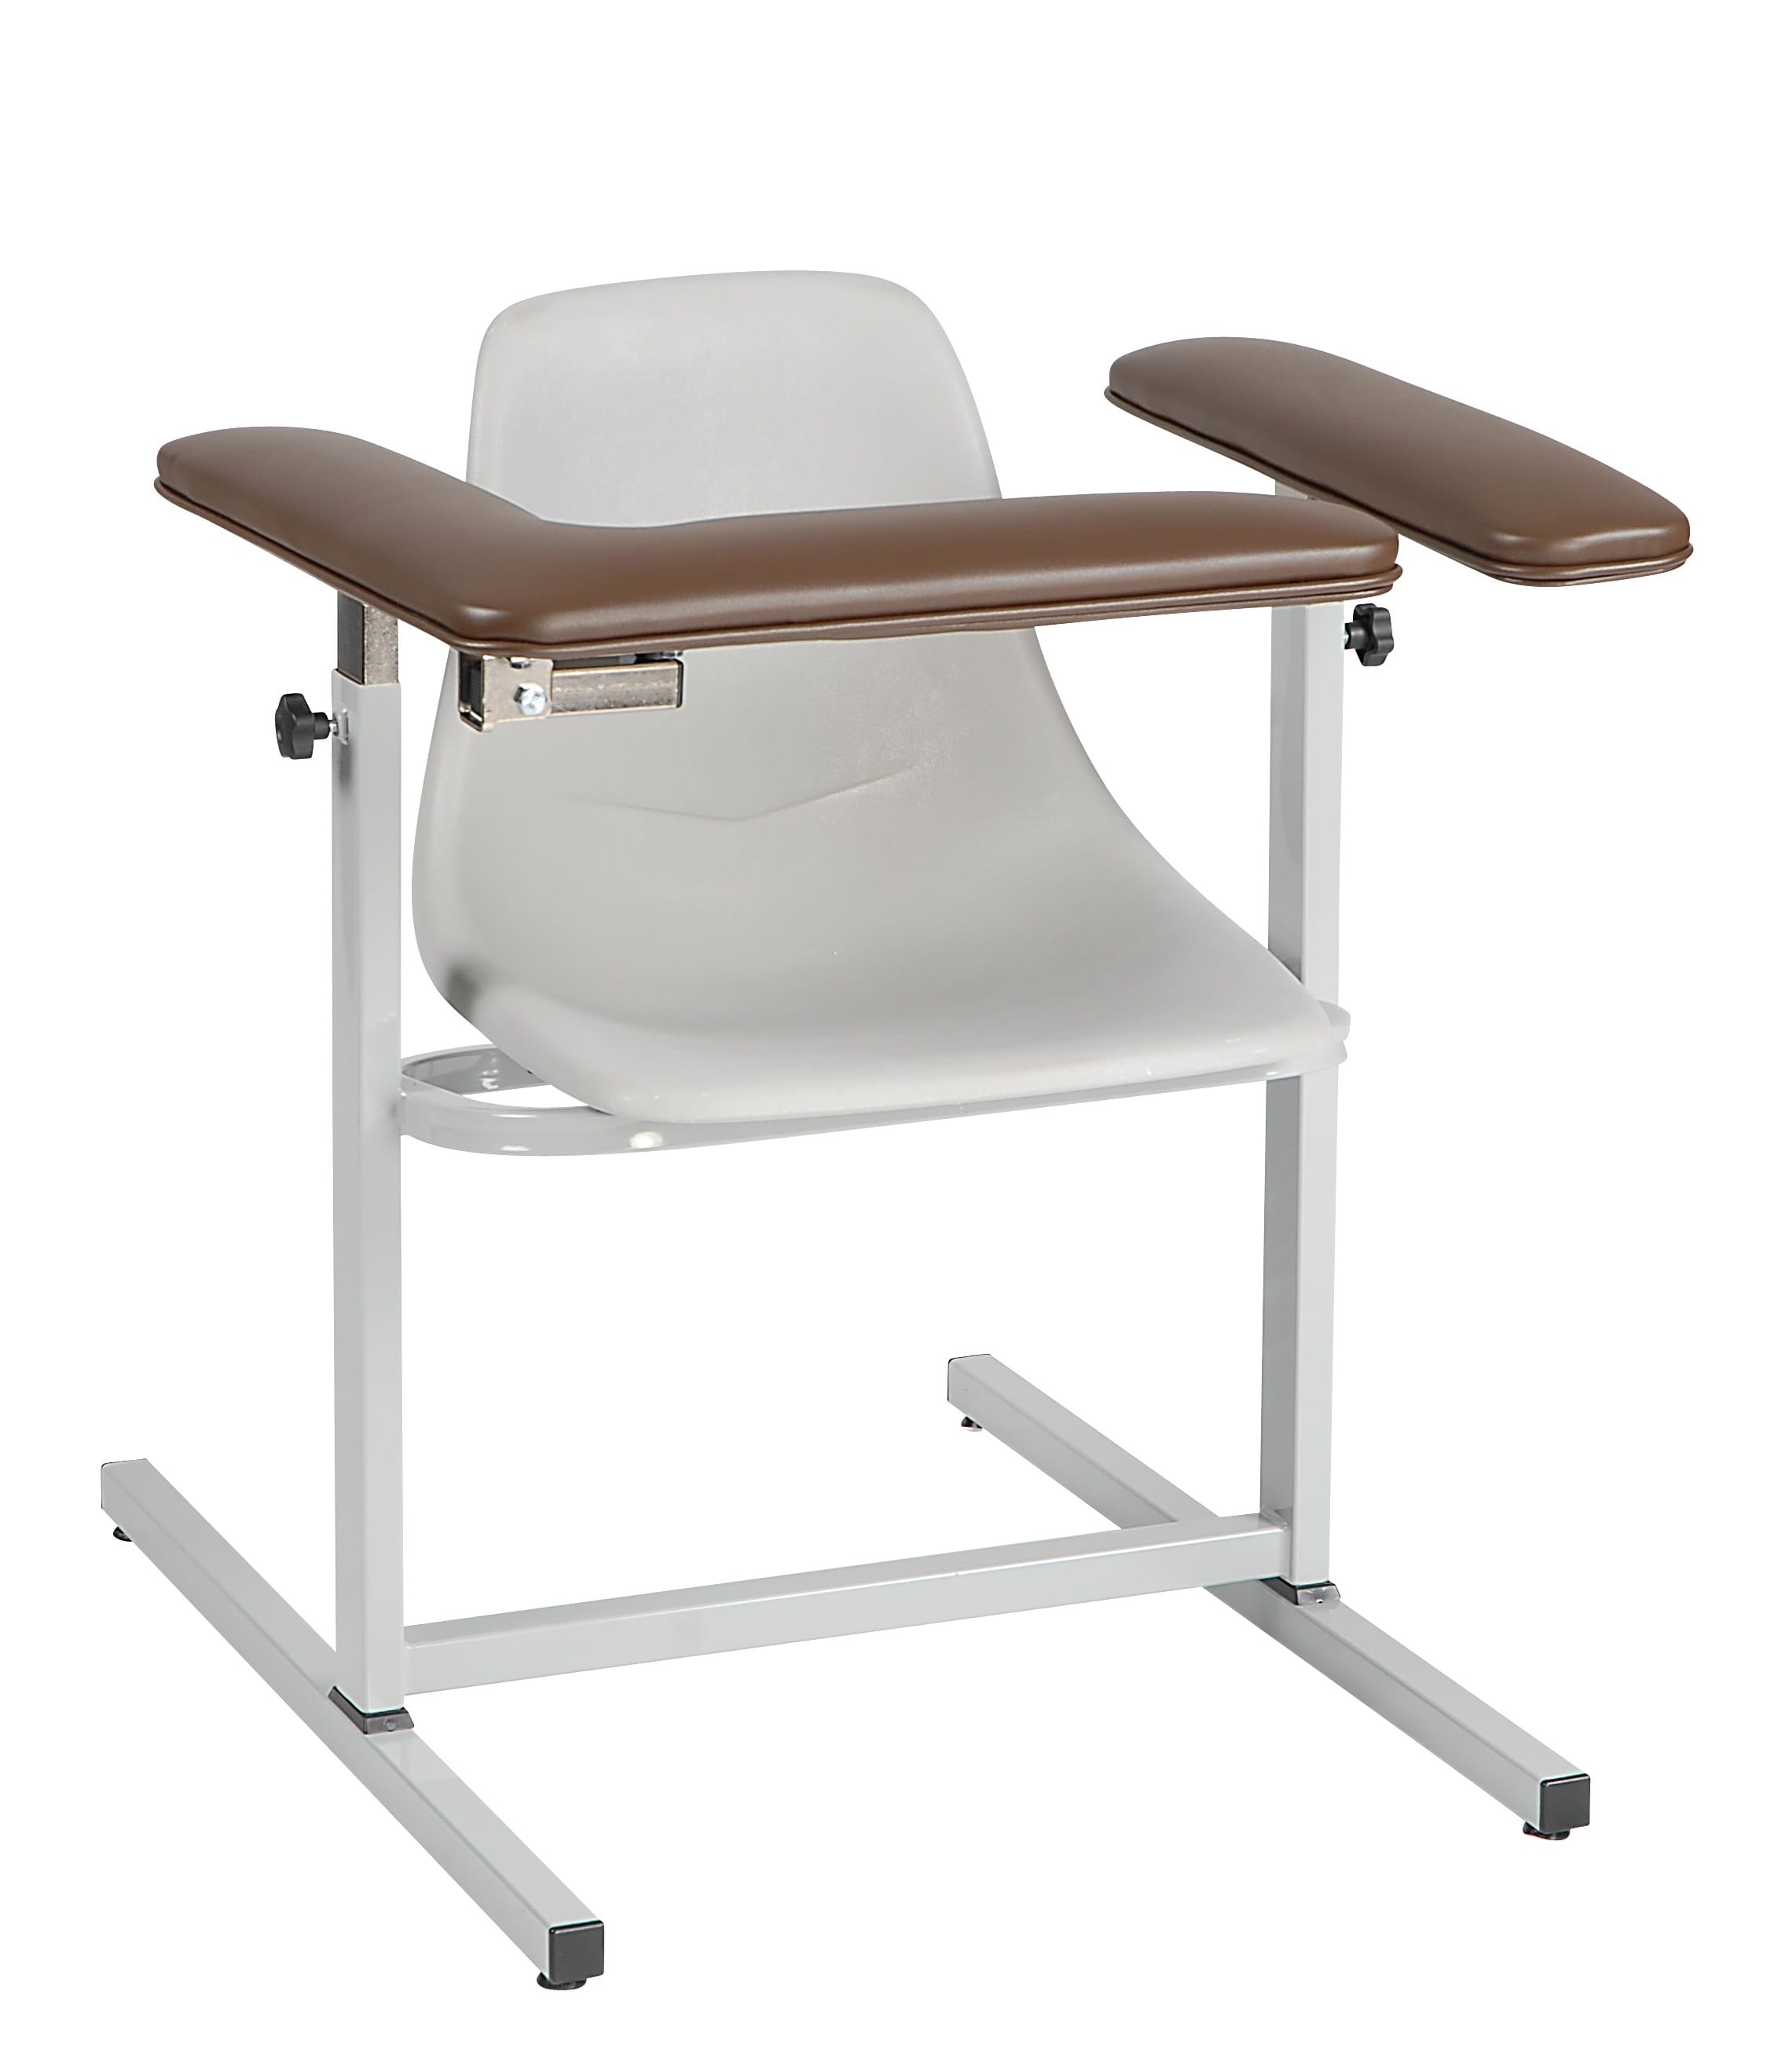  Narrow Standard Height Blood Draw Chair 1202L/N